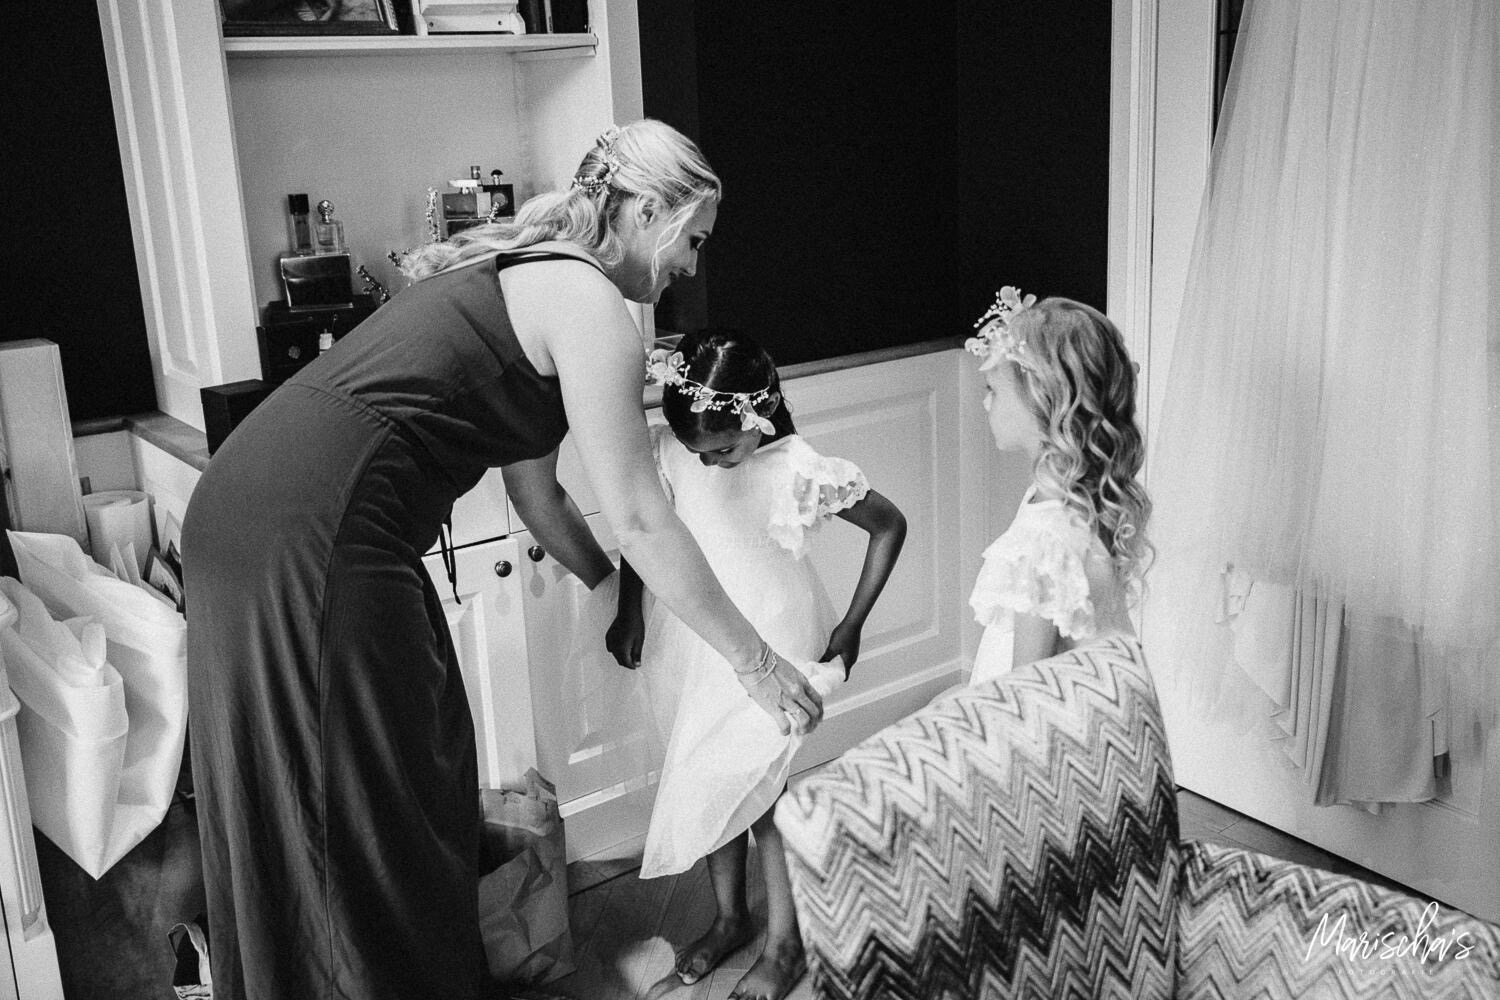 Bruidsfotograaf voor bruidsfotografie in noord holland